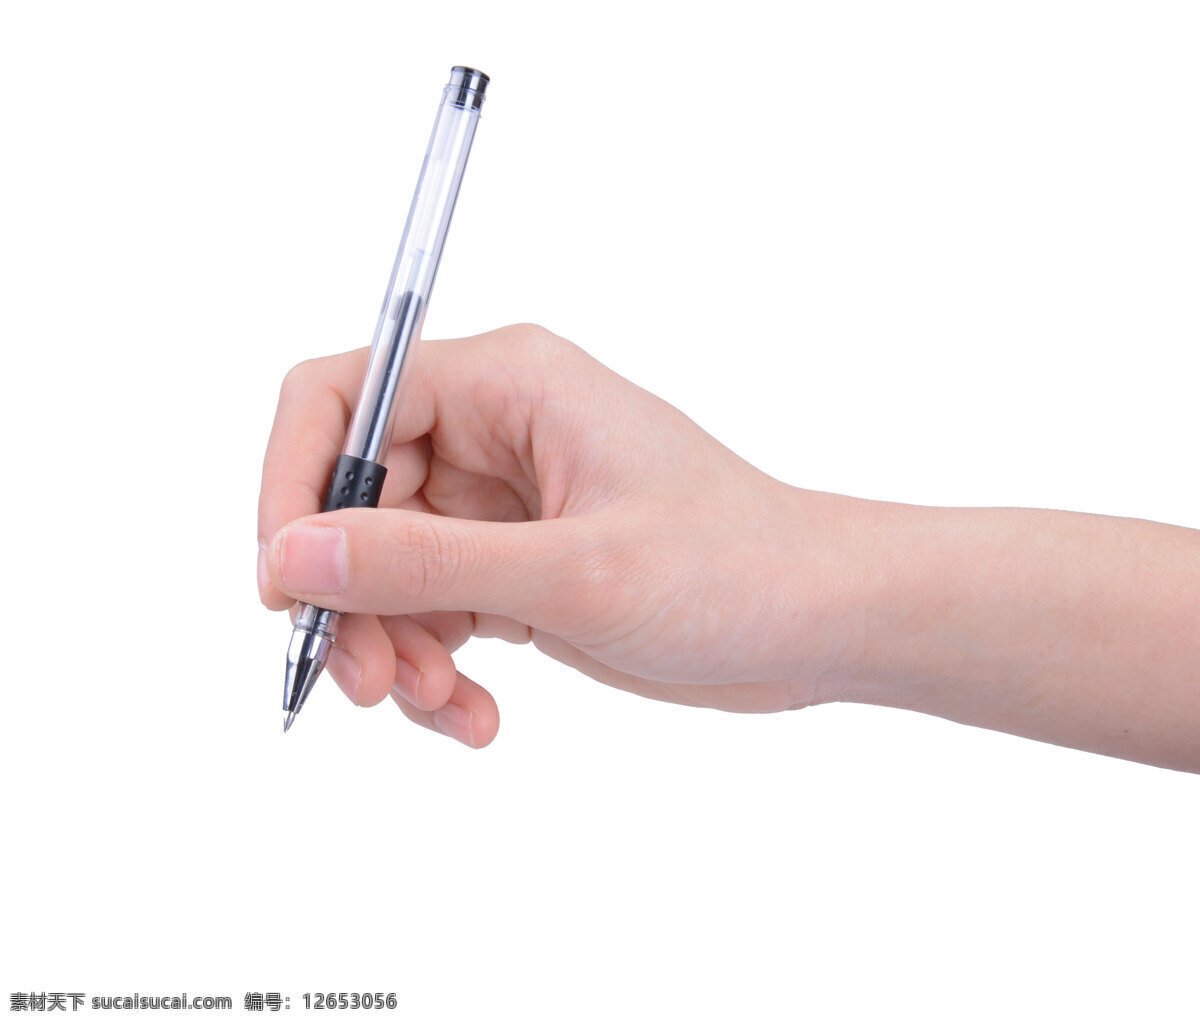 笔 动作 教学 女性 女性女人 皮肤 人物图库 手 圆珠笔 写字 手势 学习 学校 手指 女人的手 psd源文件